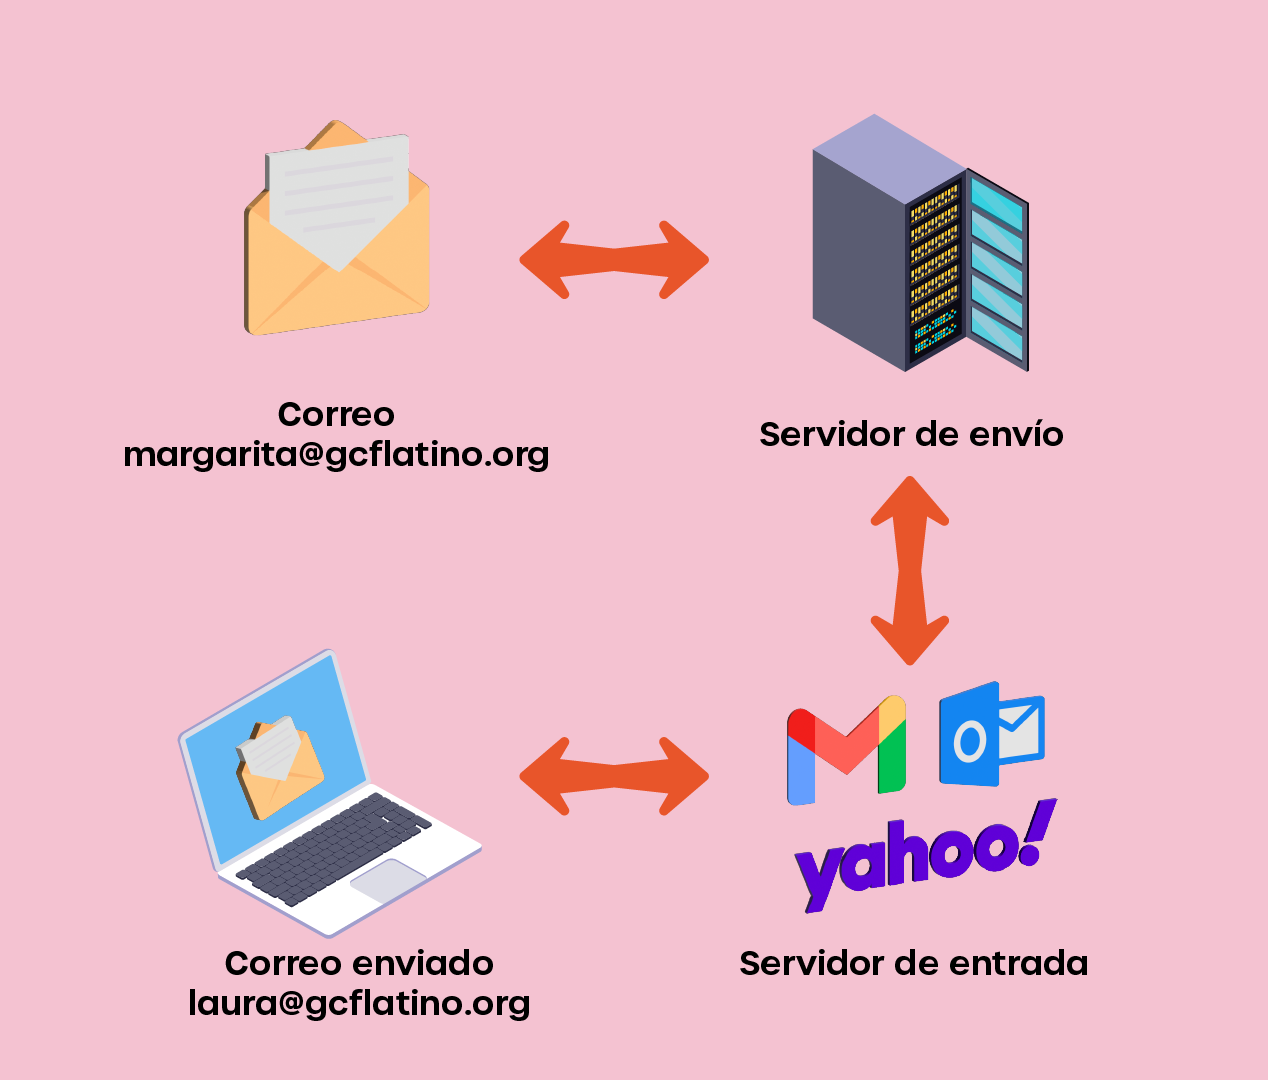 La imagen 1 ilustra el esquema general del funcionamiento del correo electrónico explicado mediante un ejemplo: